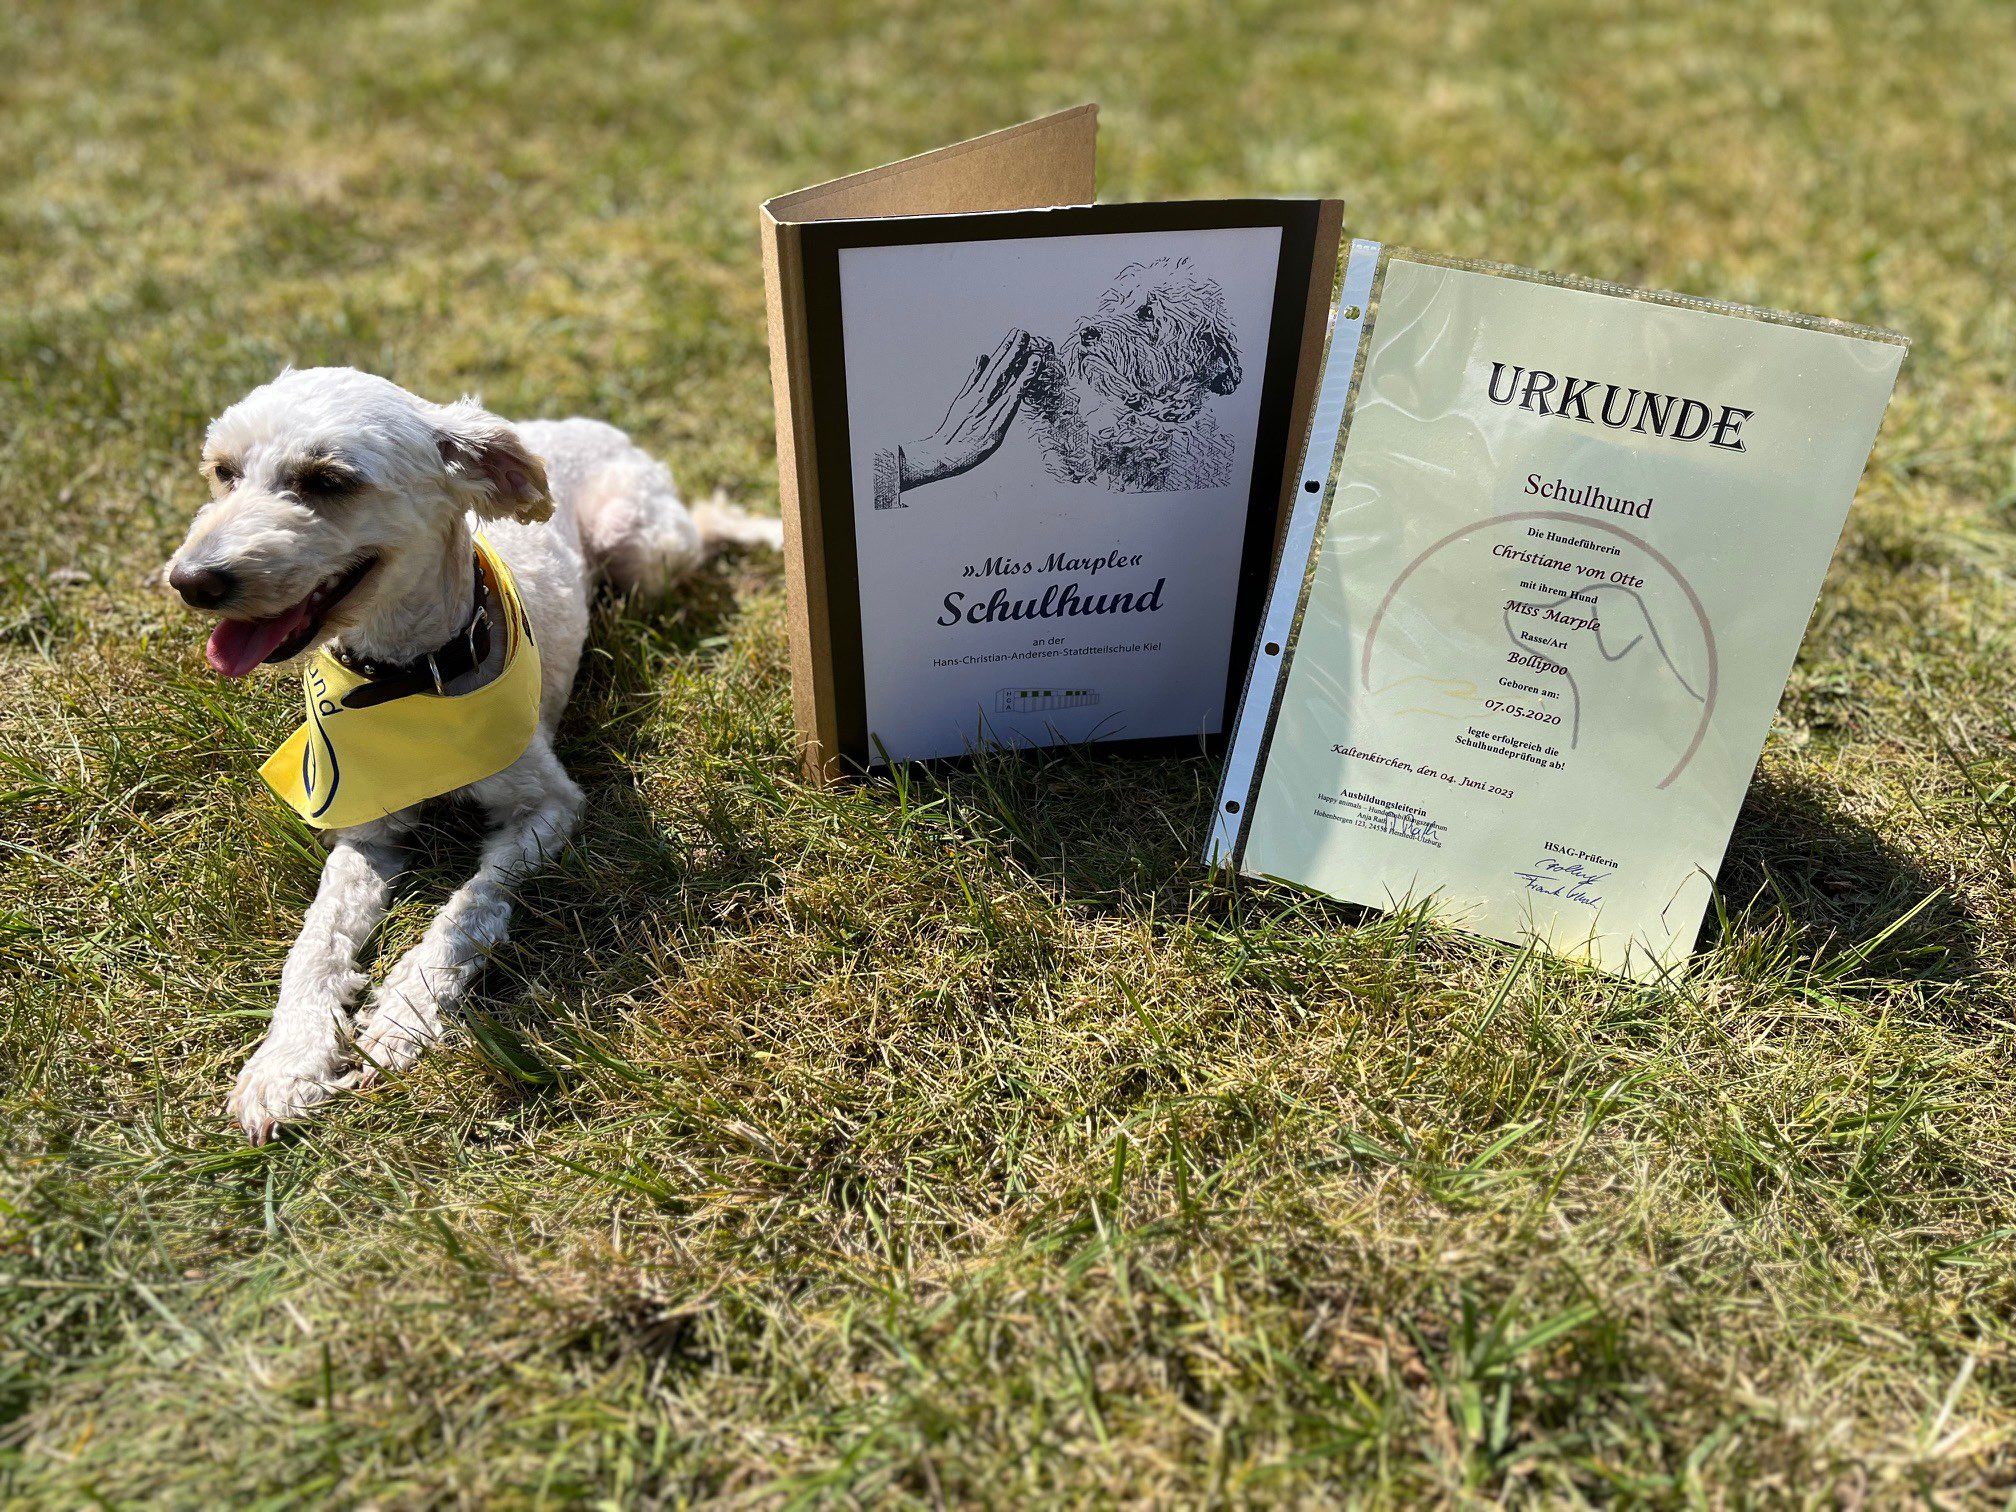 Schulhund Miss Marple nach bestandener Schulhund-Prüfung